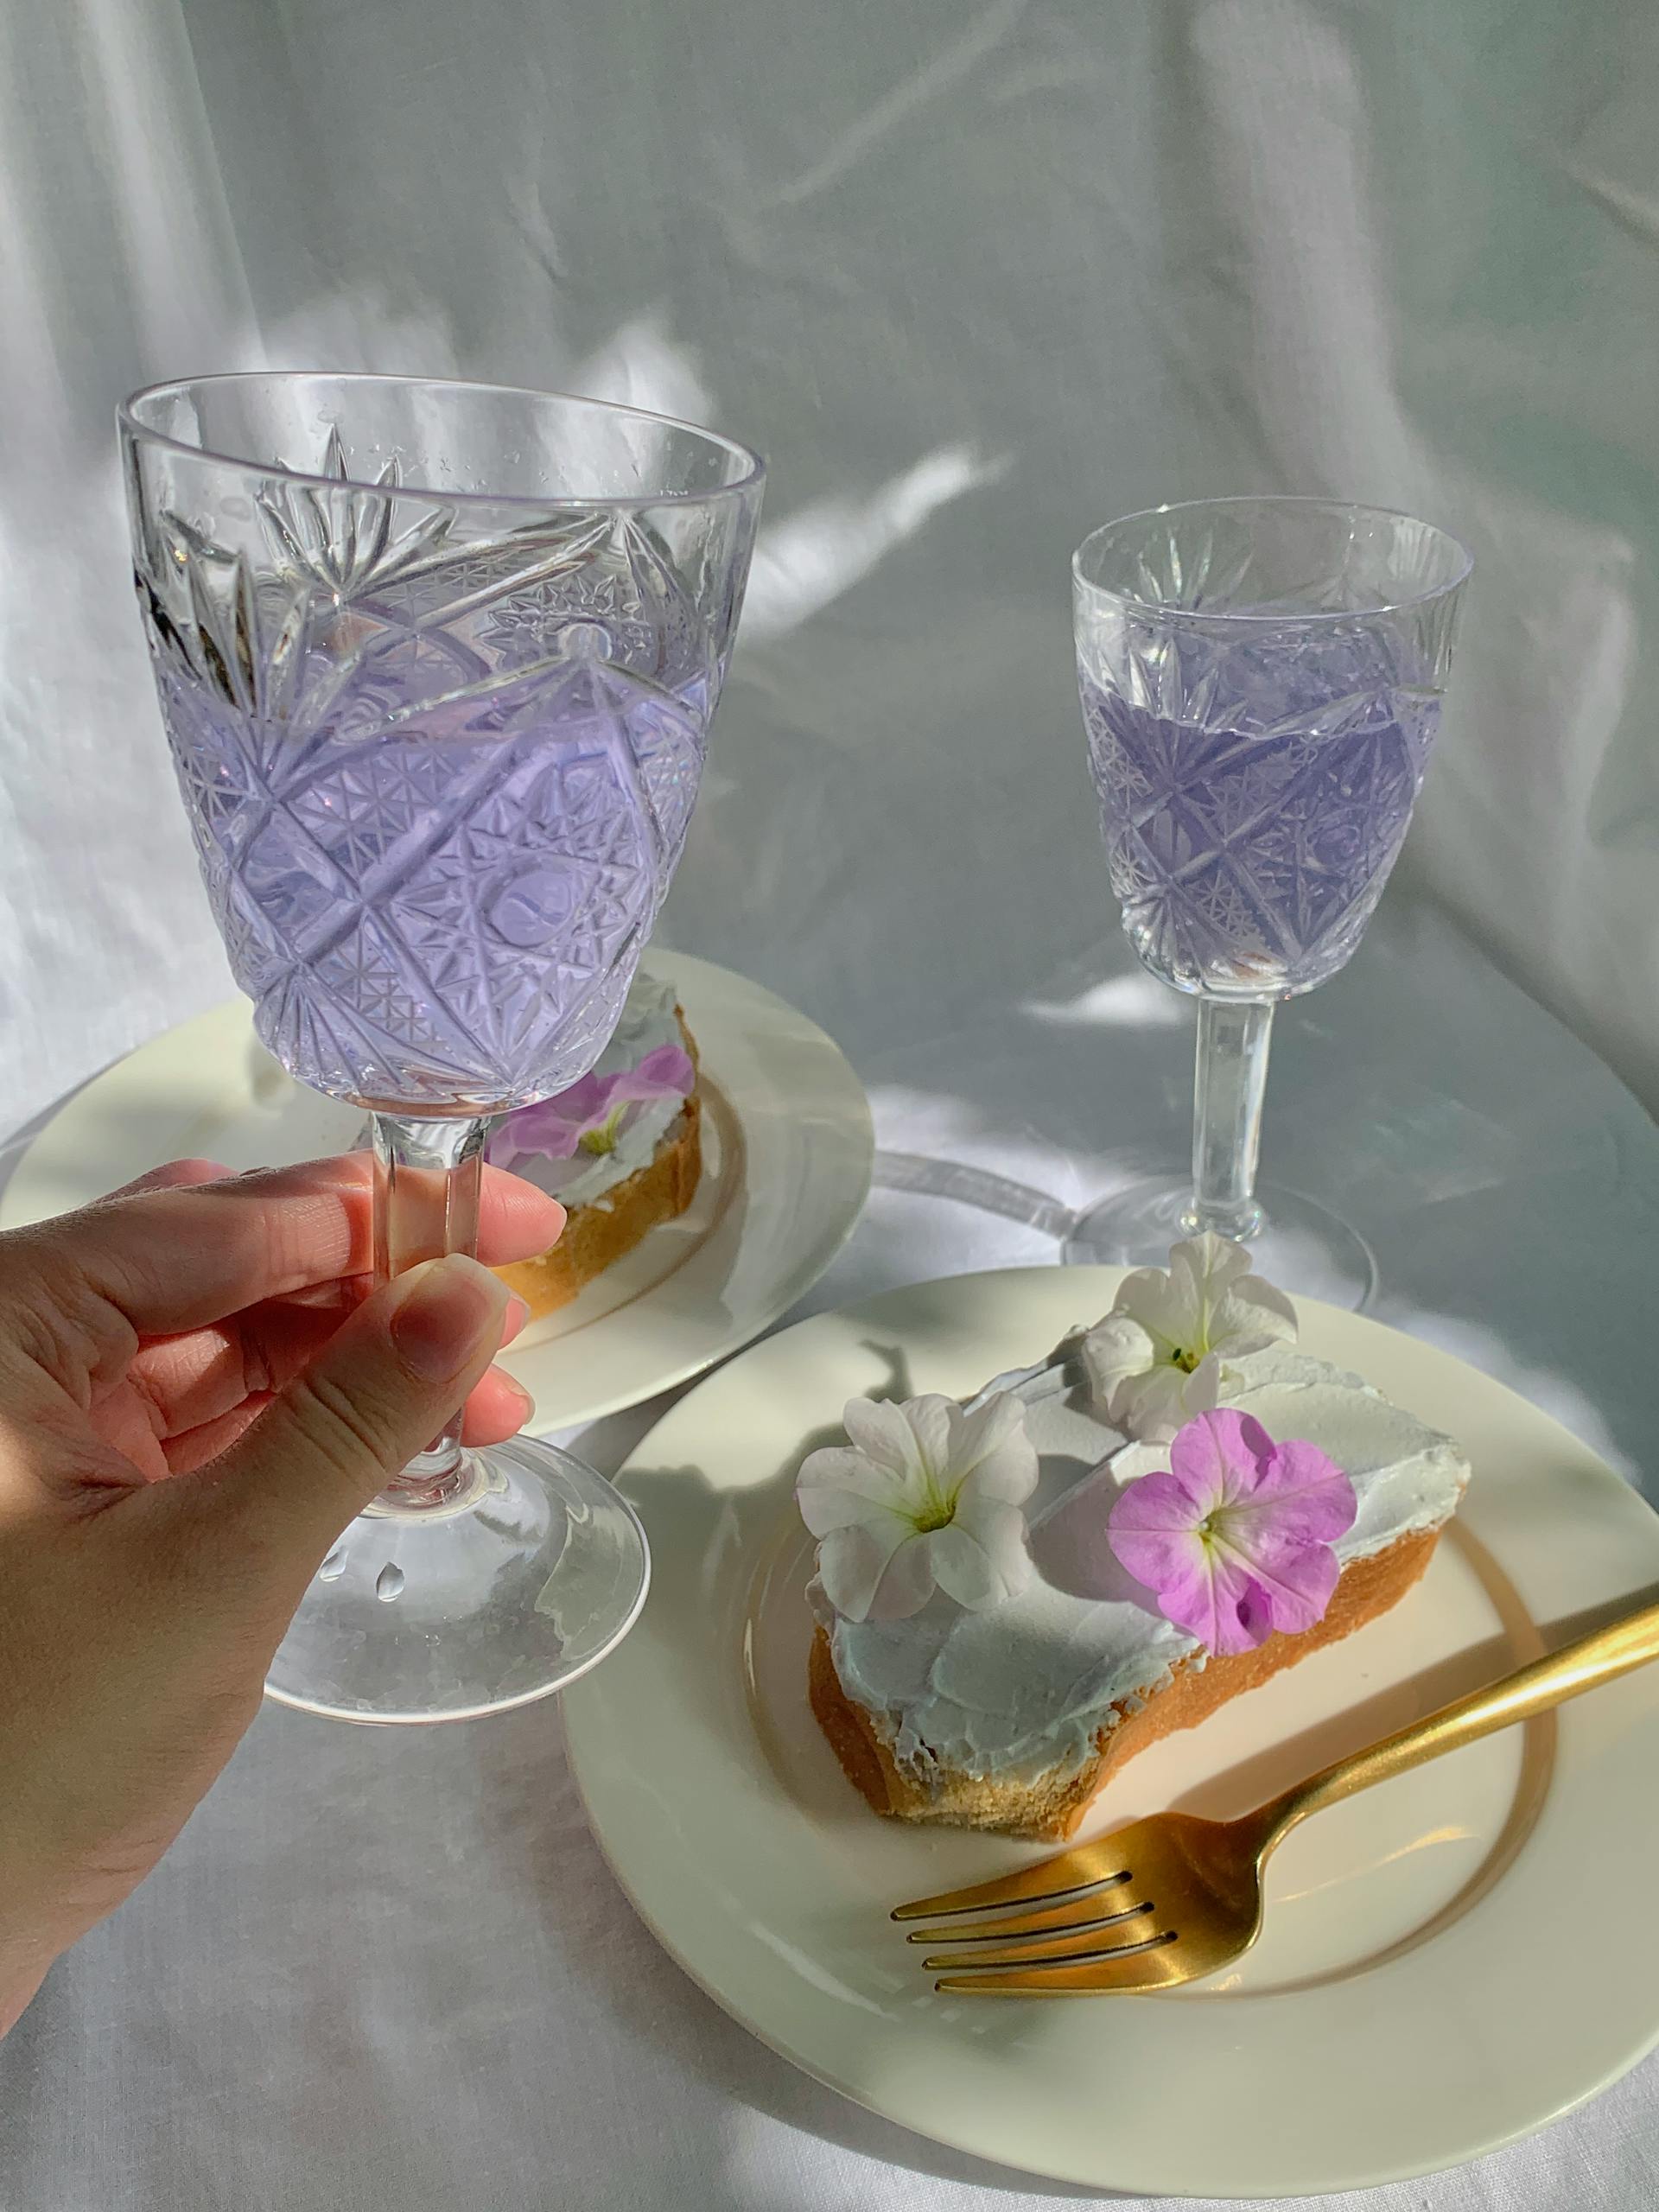 Une personne tenant un verre de vin en gobelet au-dessus d'une assiette avec des fleurs sur du pain | Source : Pexels